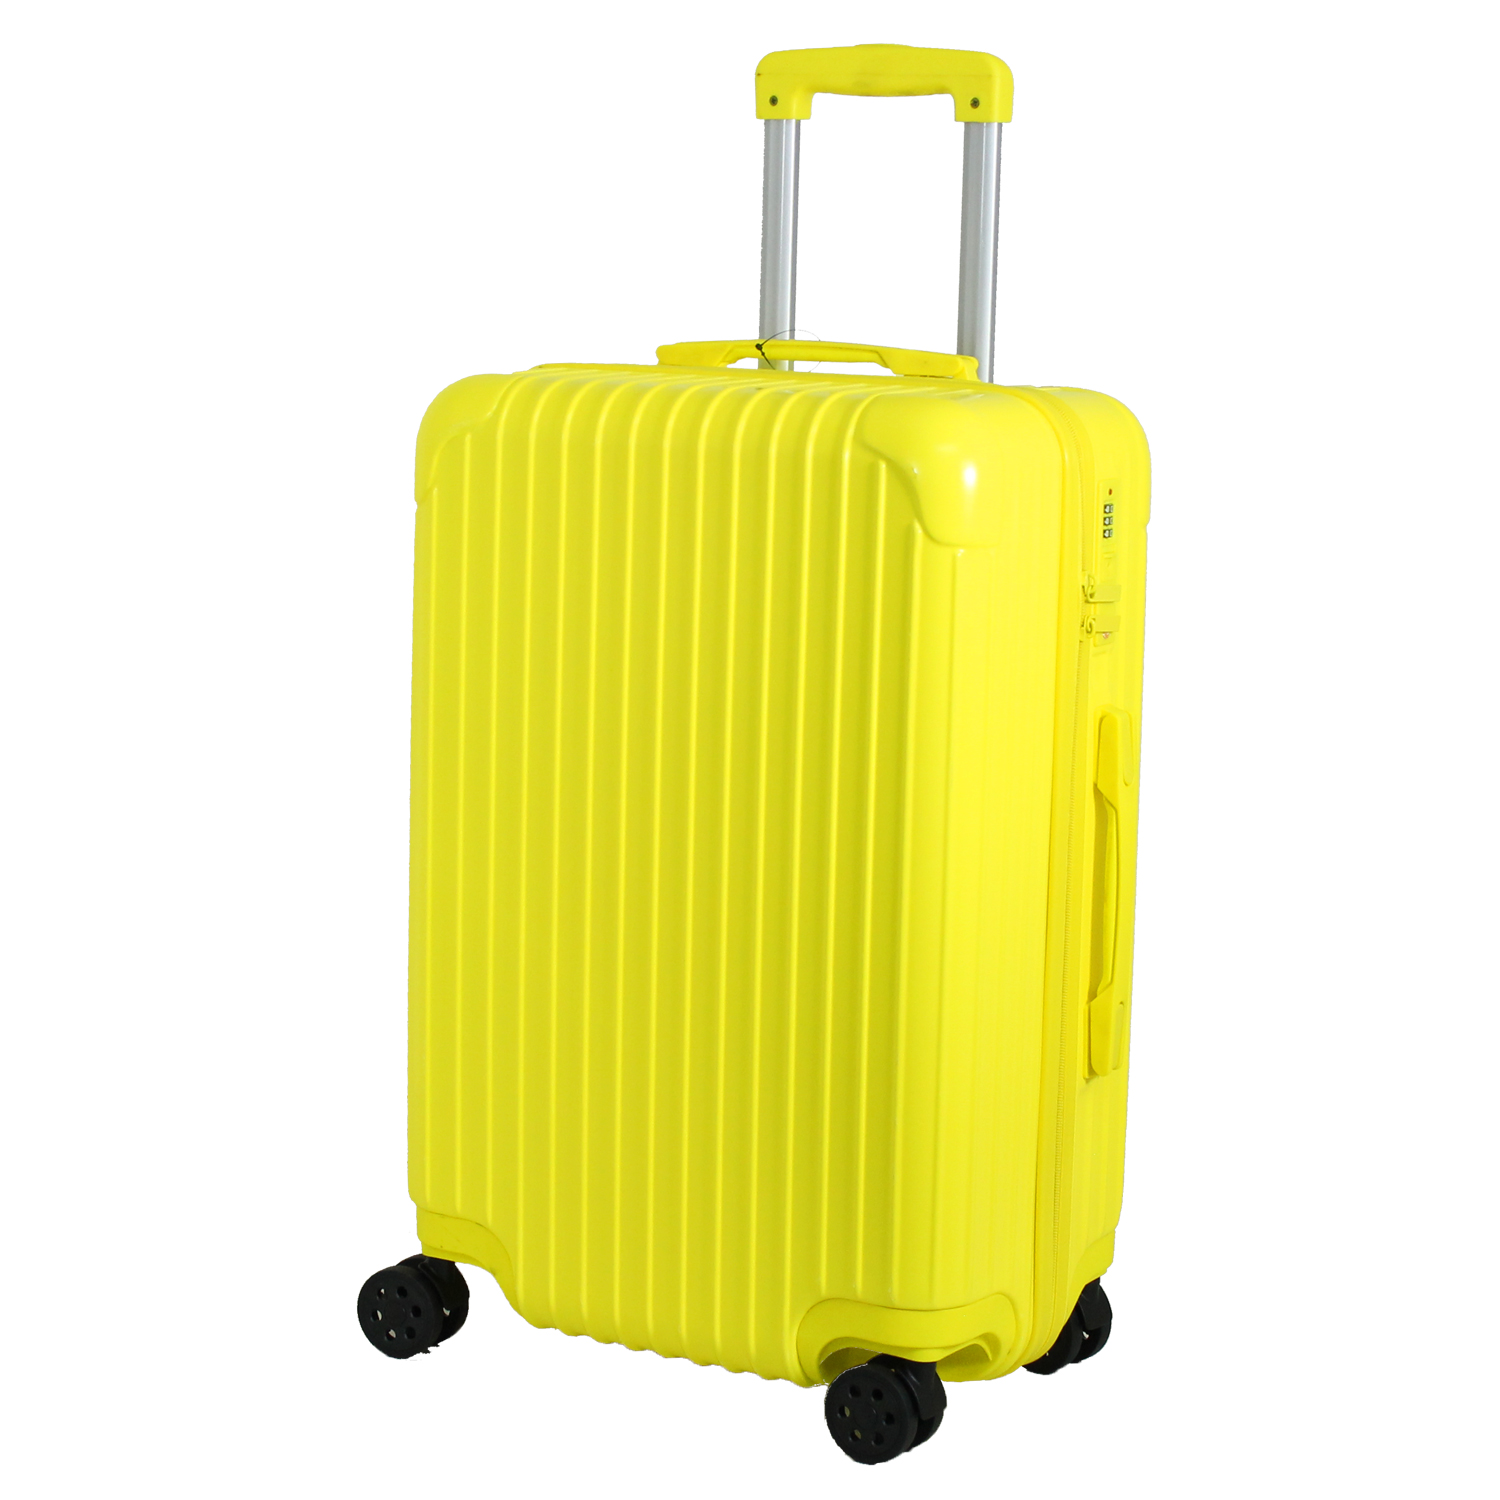 スーツケース キャリーケース Mサイズ かわいい 修学旅行 日本企業企画 